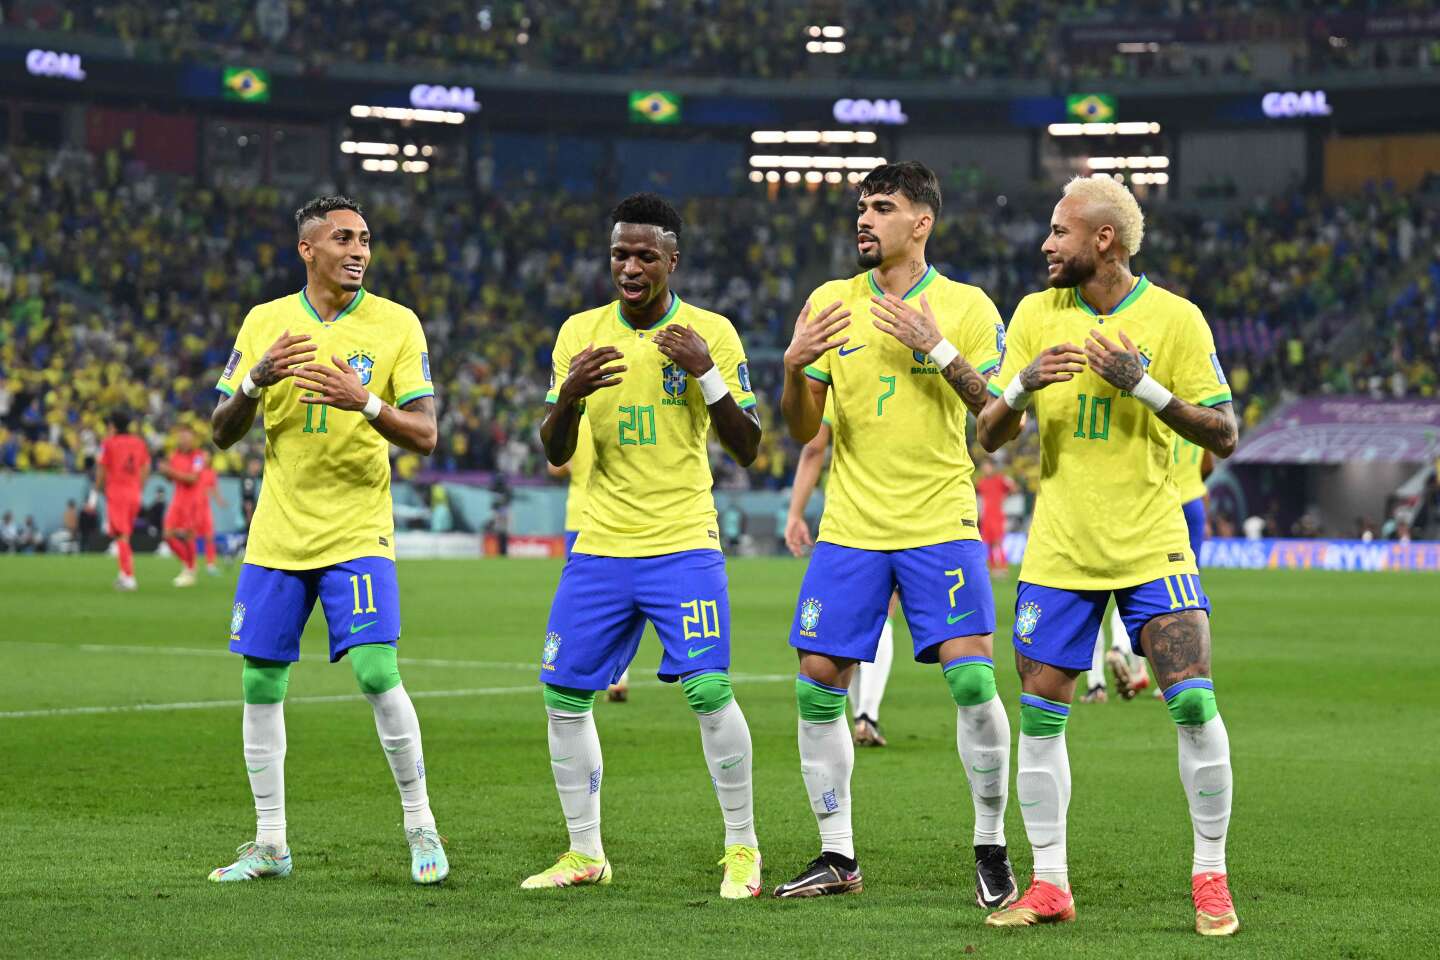 Coupe du monde 2022 : face à la Corée du Sud, les Brésiliens ressuscitent leur gloire passée - Le Monde